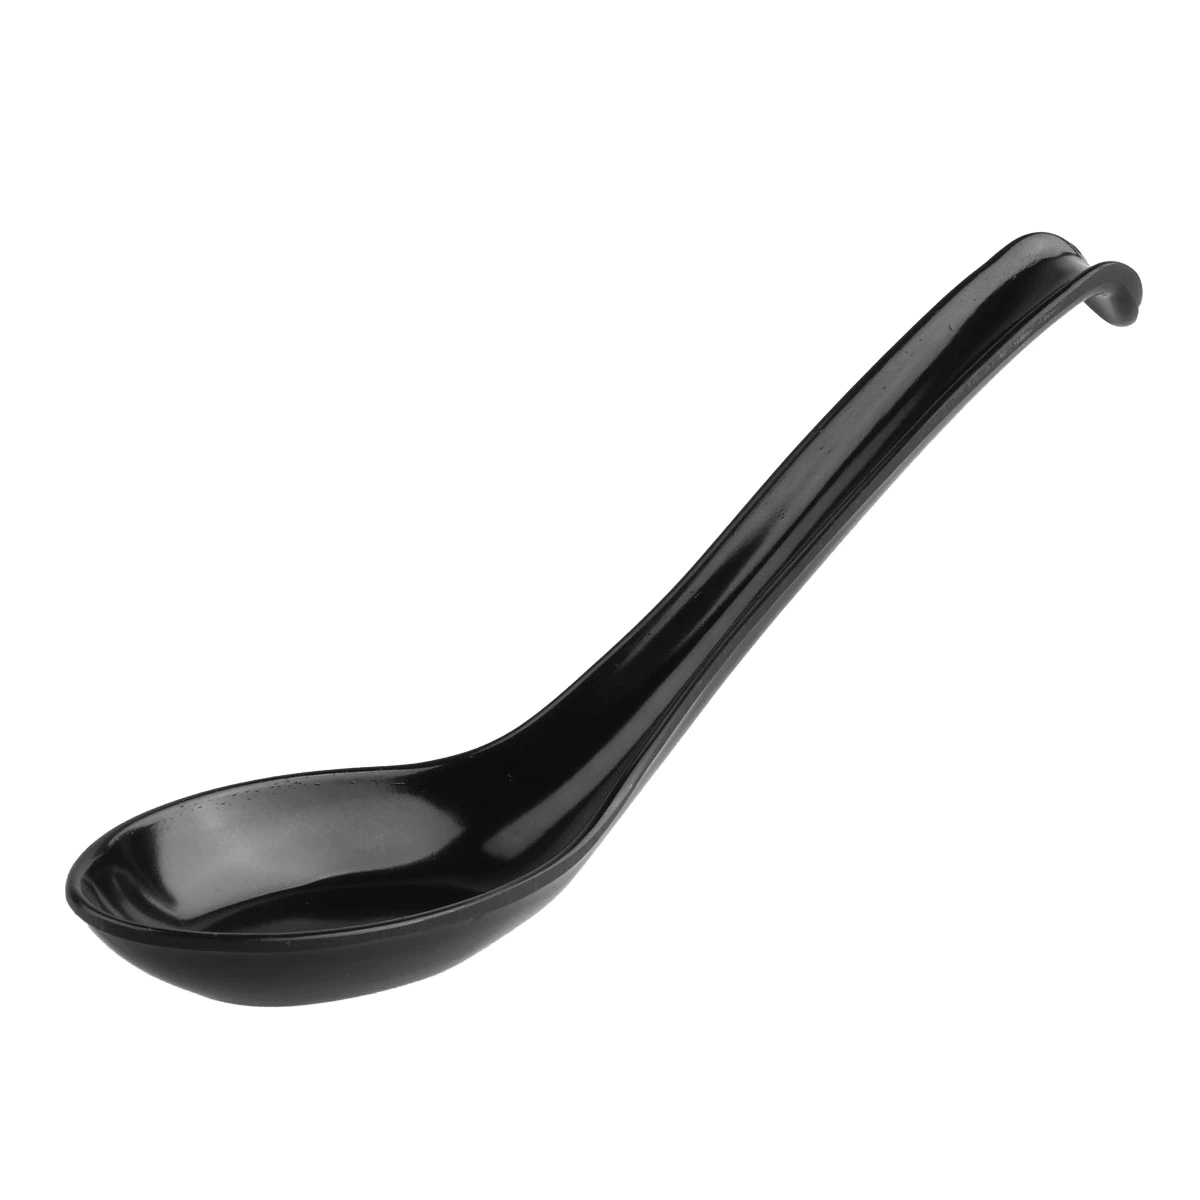 5Pcs Ramen Noodle Soup Spoon Set Long Handle Plastic Spoons Flatware